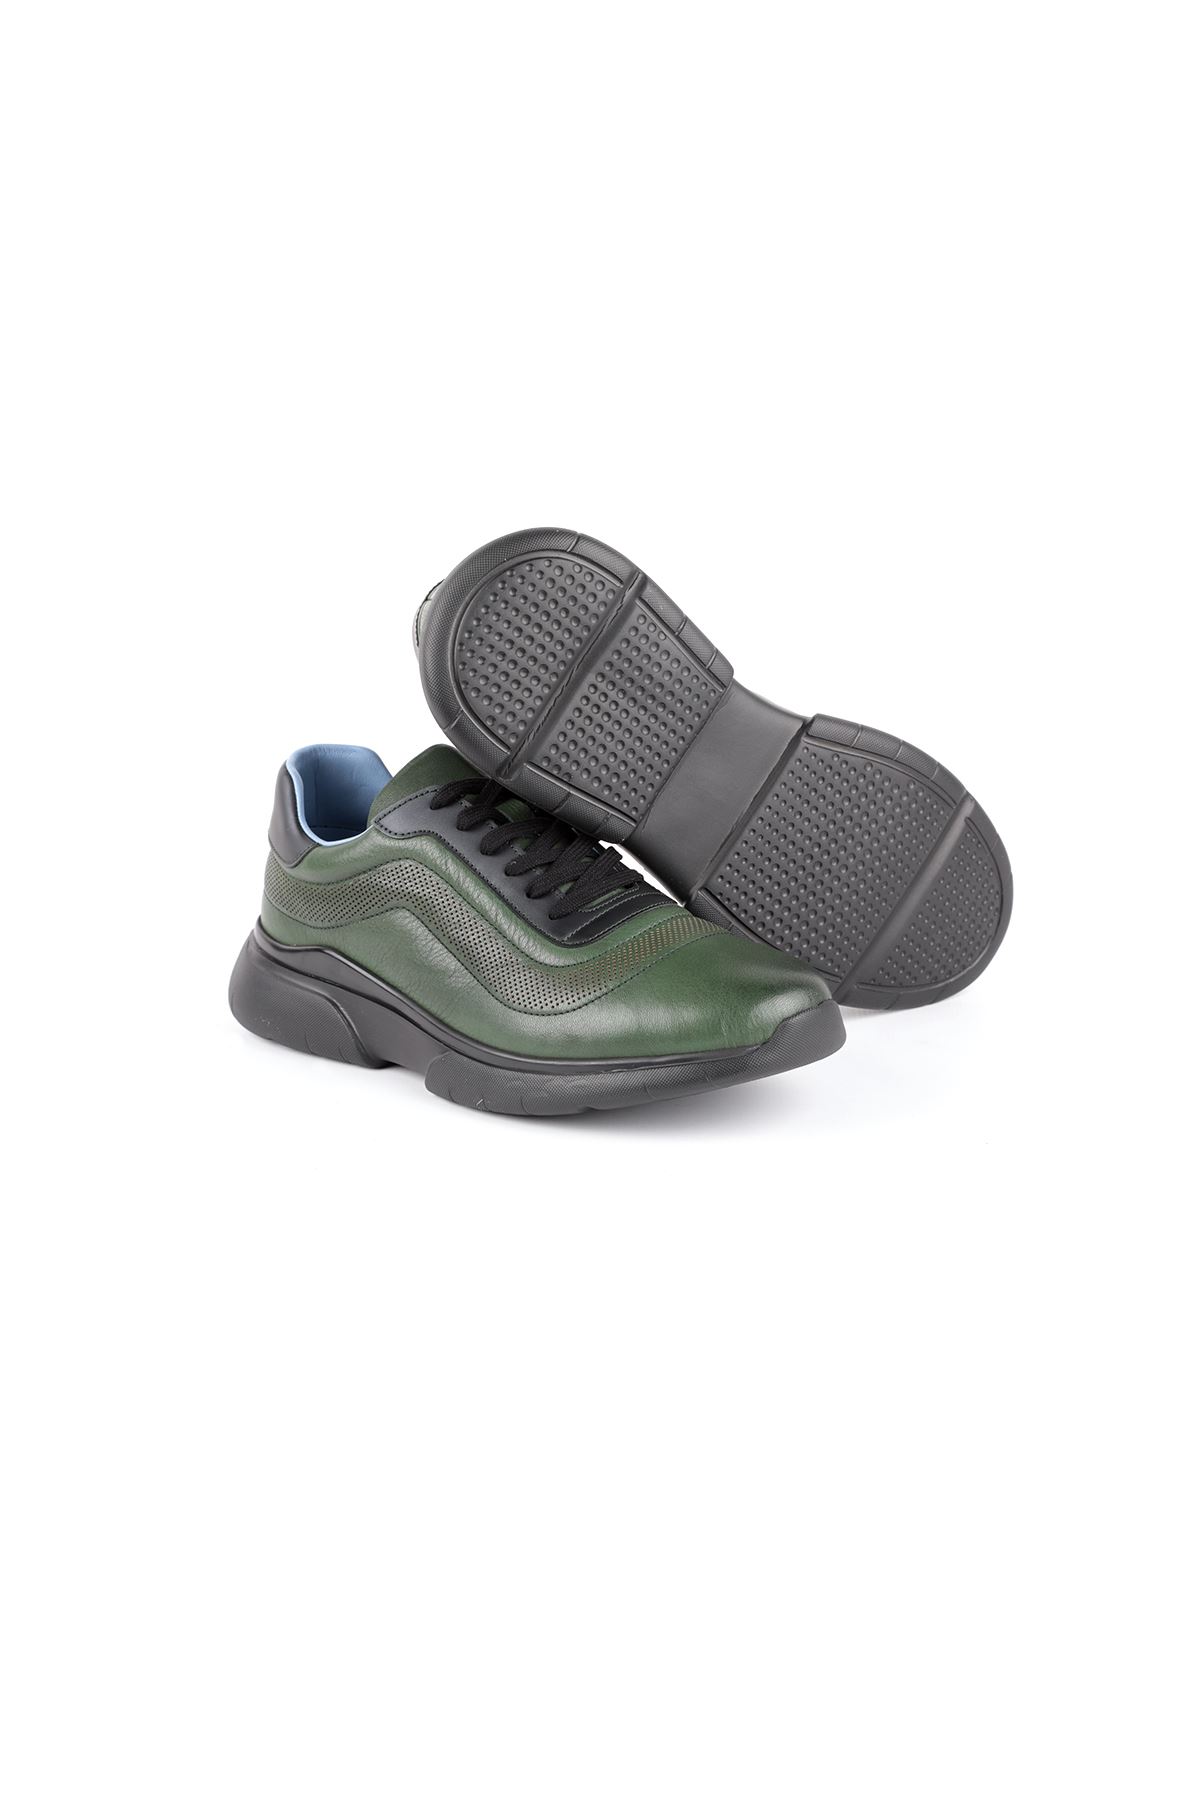 Libero L3774 Green Sport Shoes